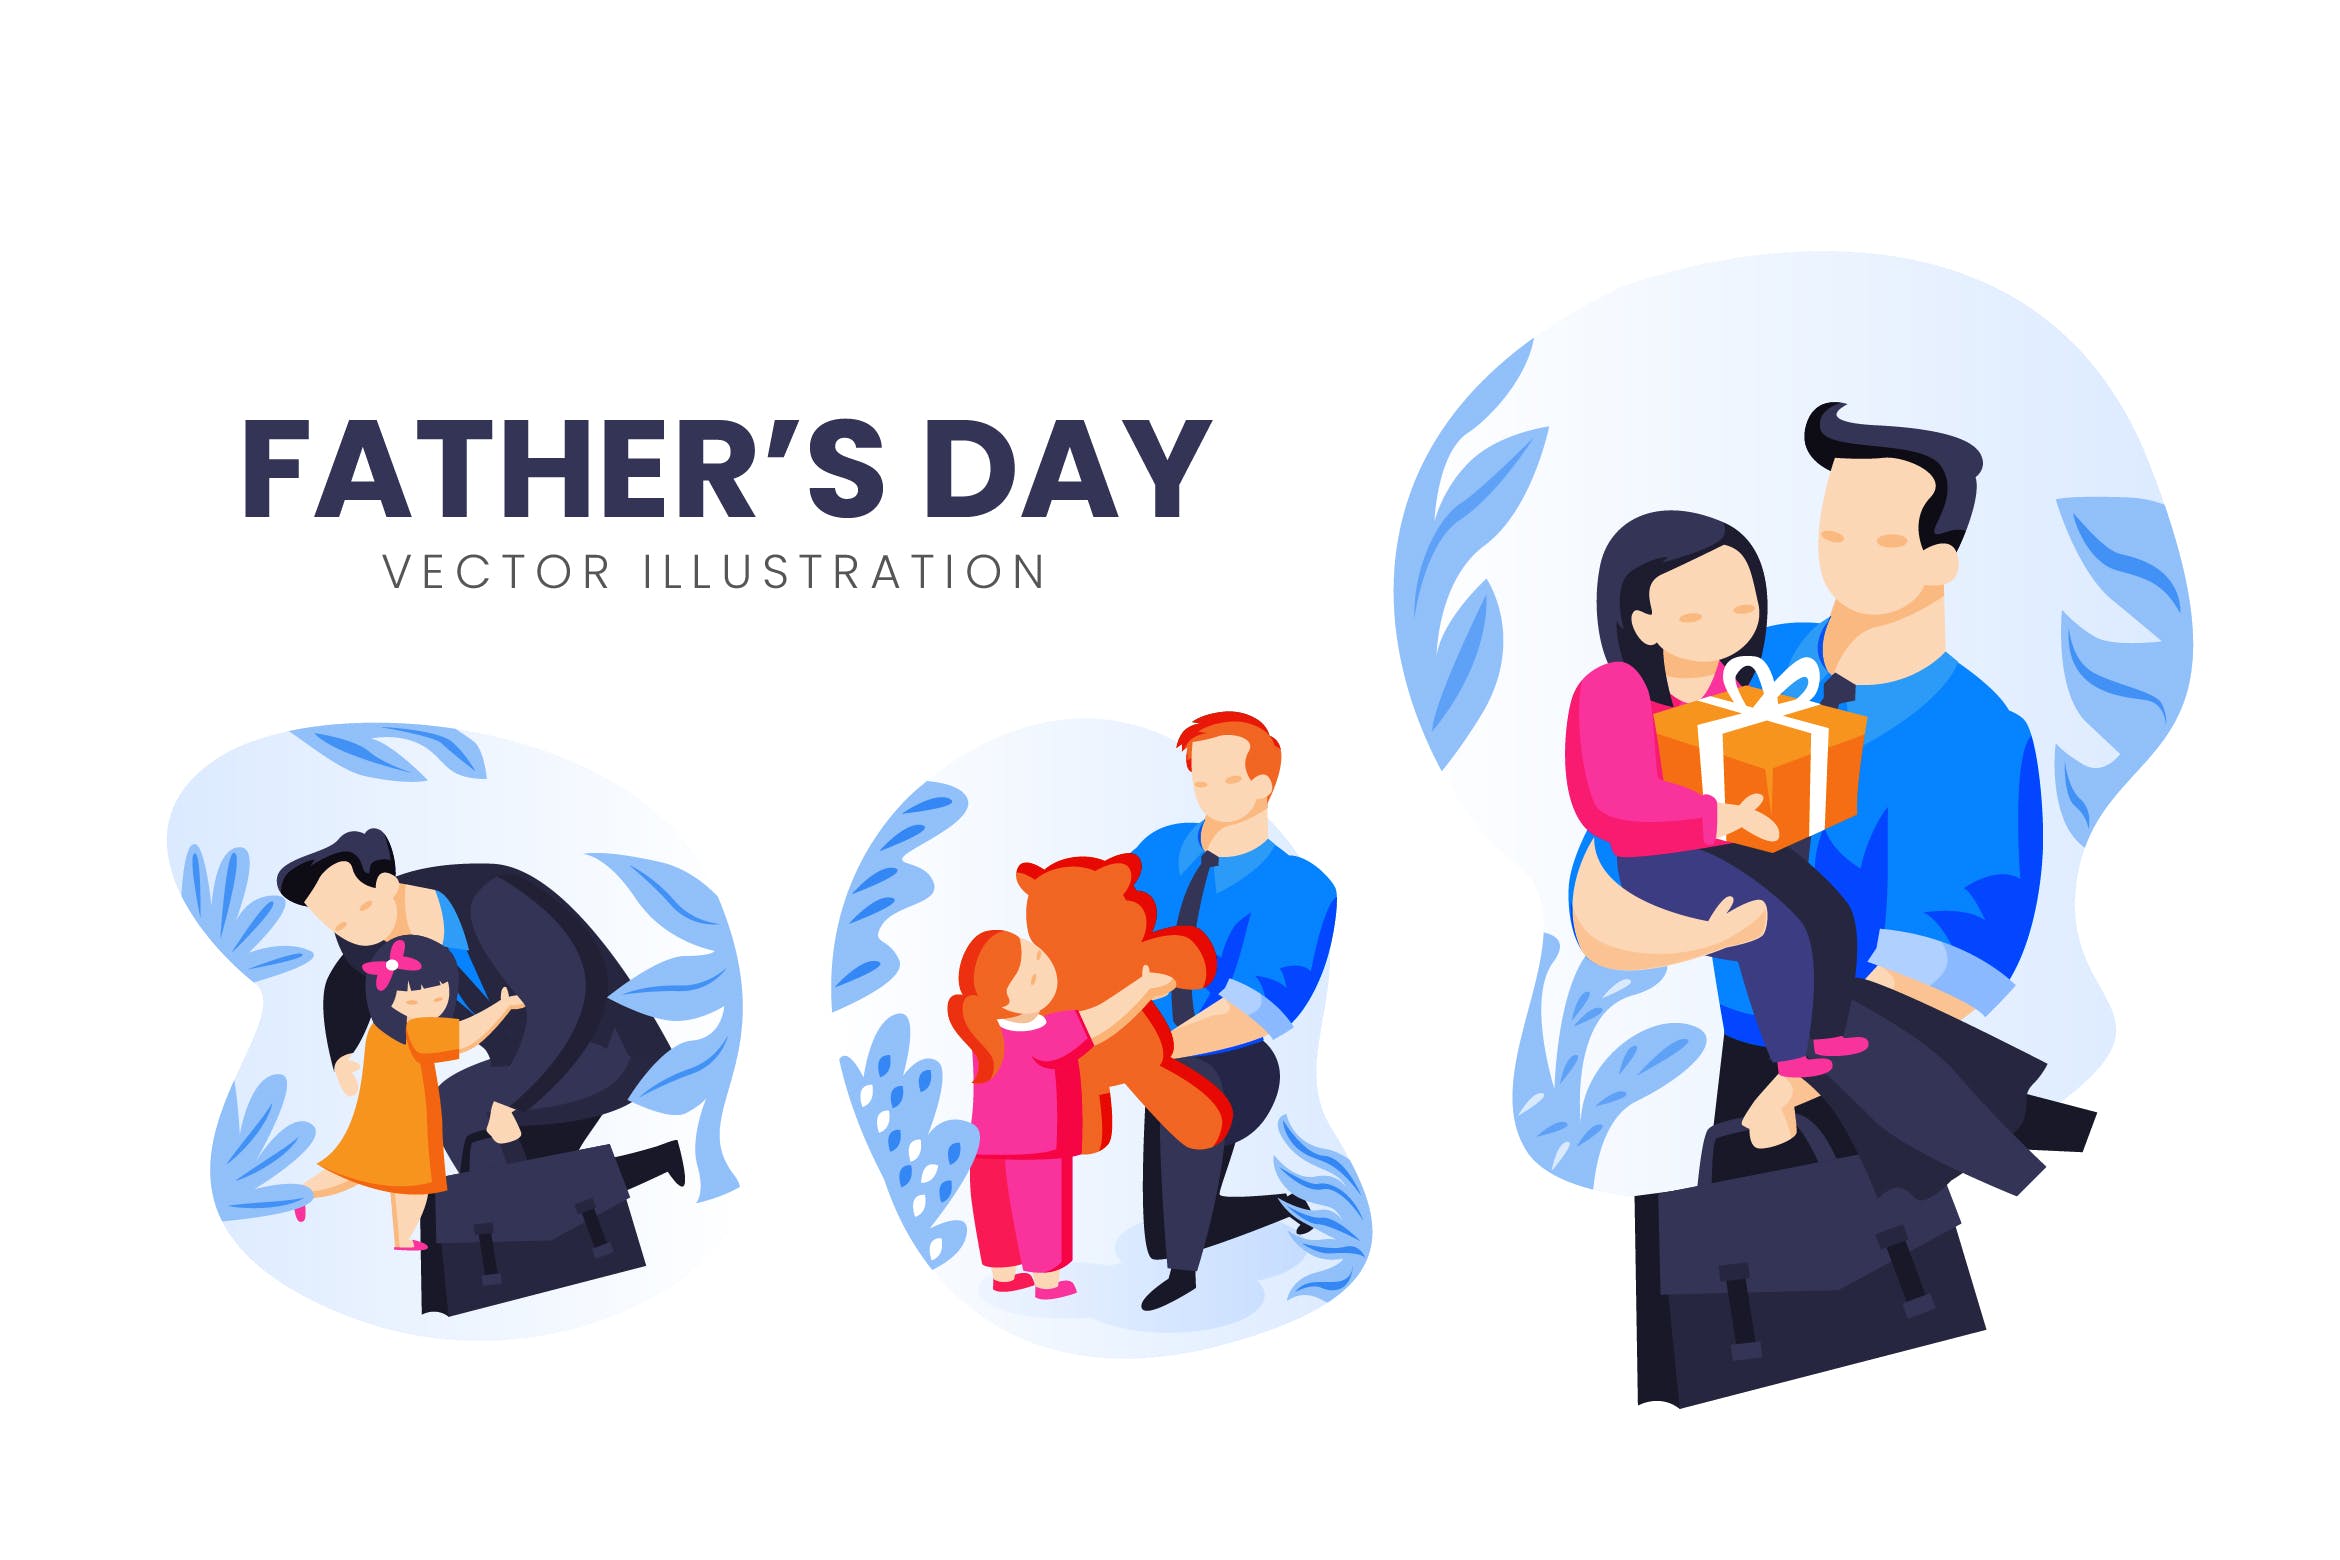 父亲节主题人物形象素材库精选手绘插画矢量素材 Fathers Day Vector Character Set插图